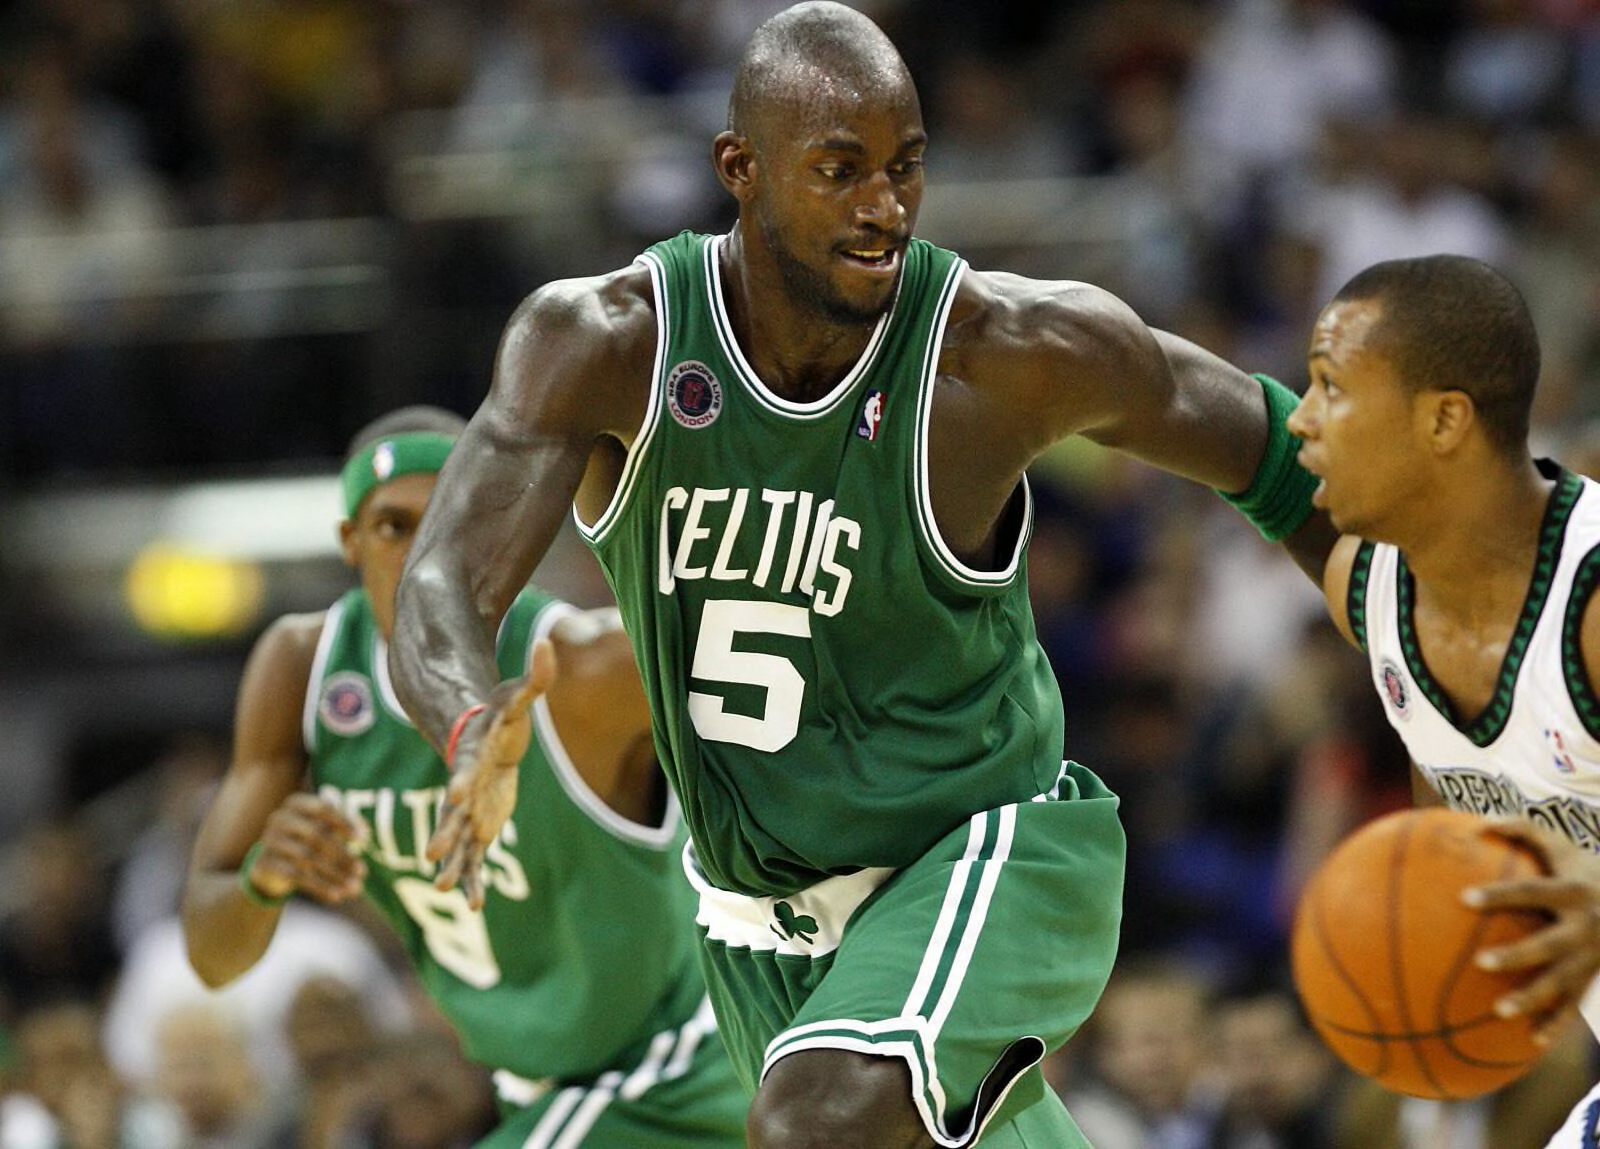 Celtics' Kevin Garnett shares his love for Boston's fans